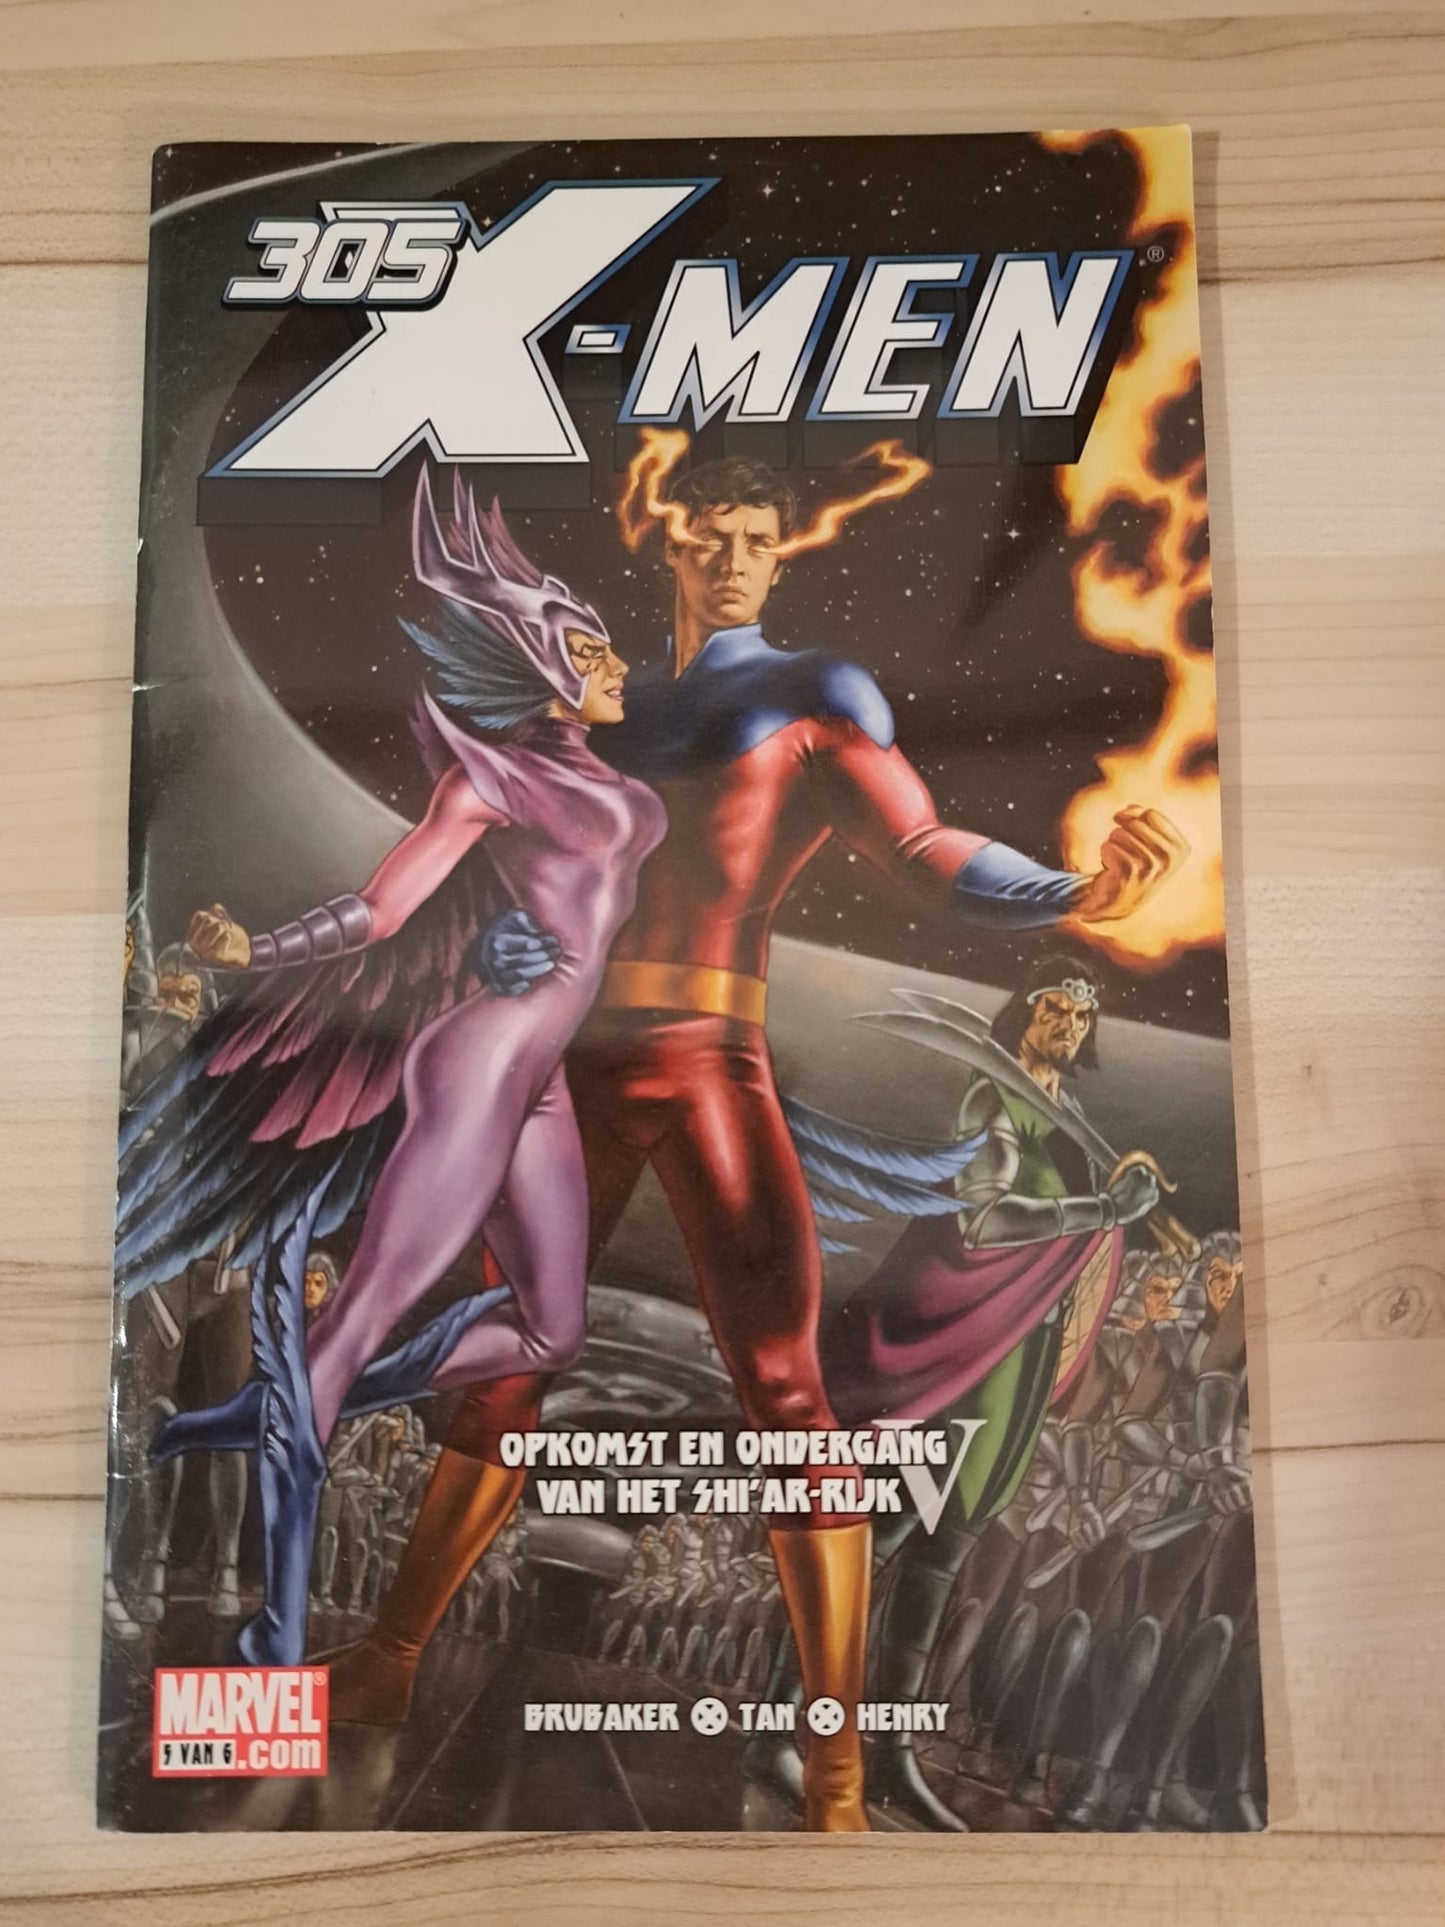 X-mannen #305